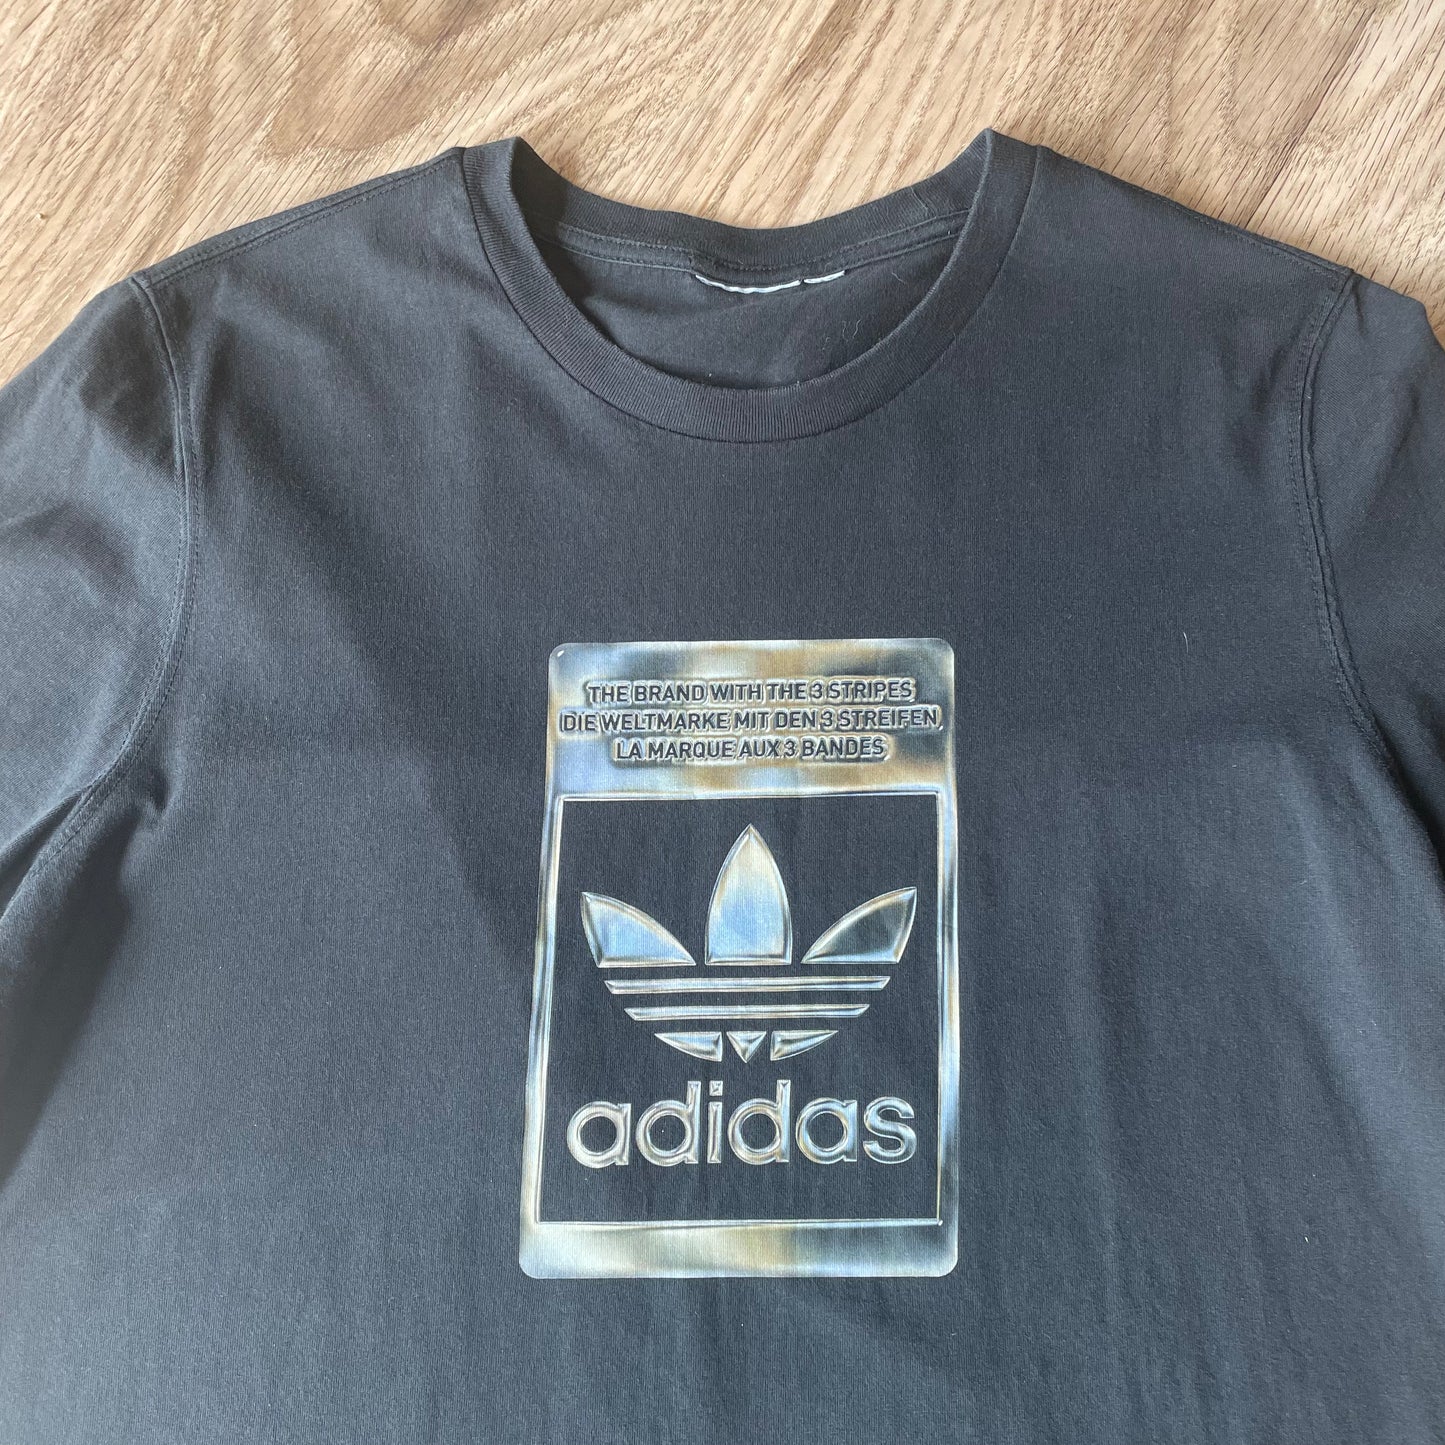 Adidas original T-shirt